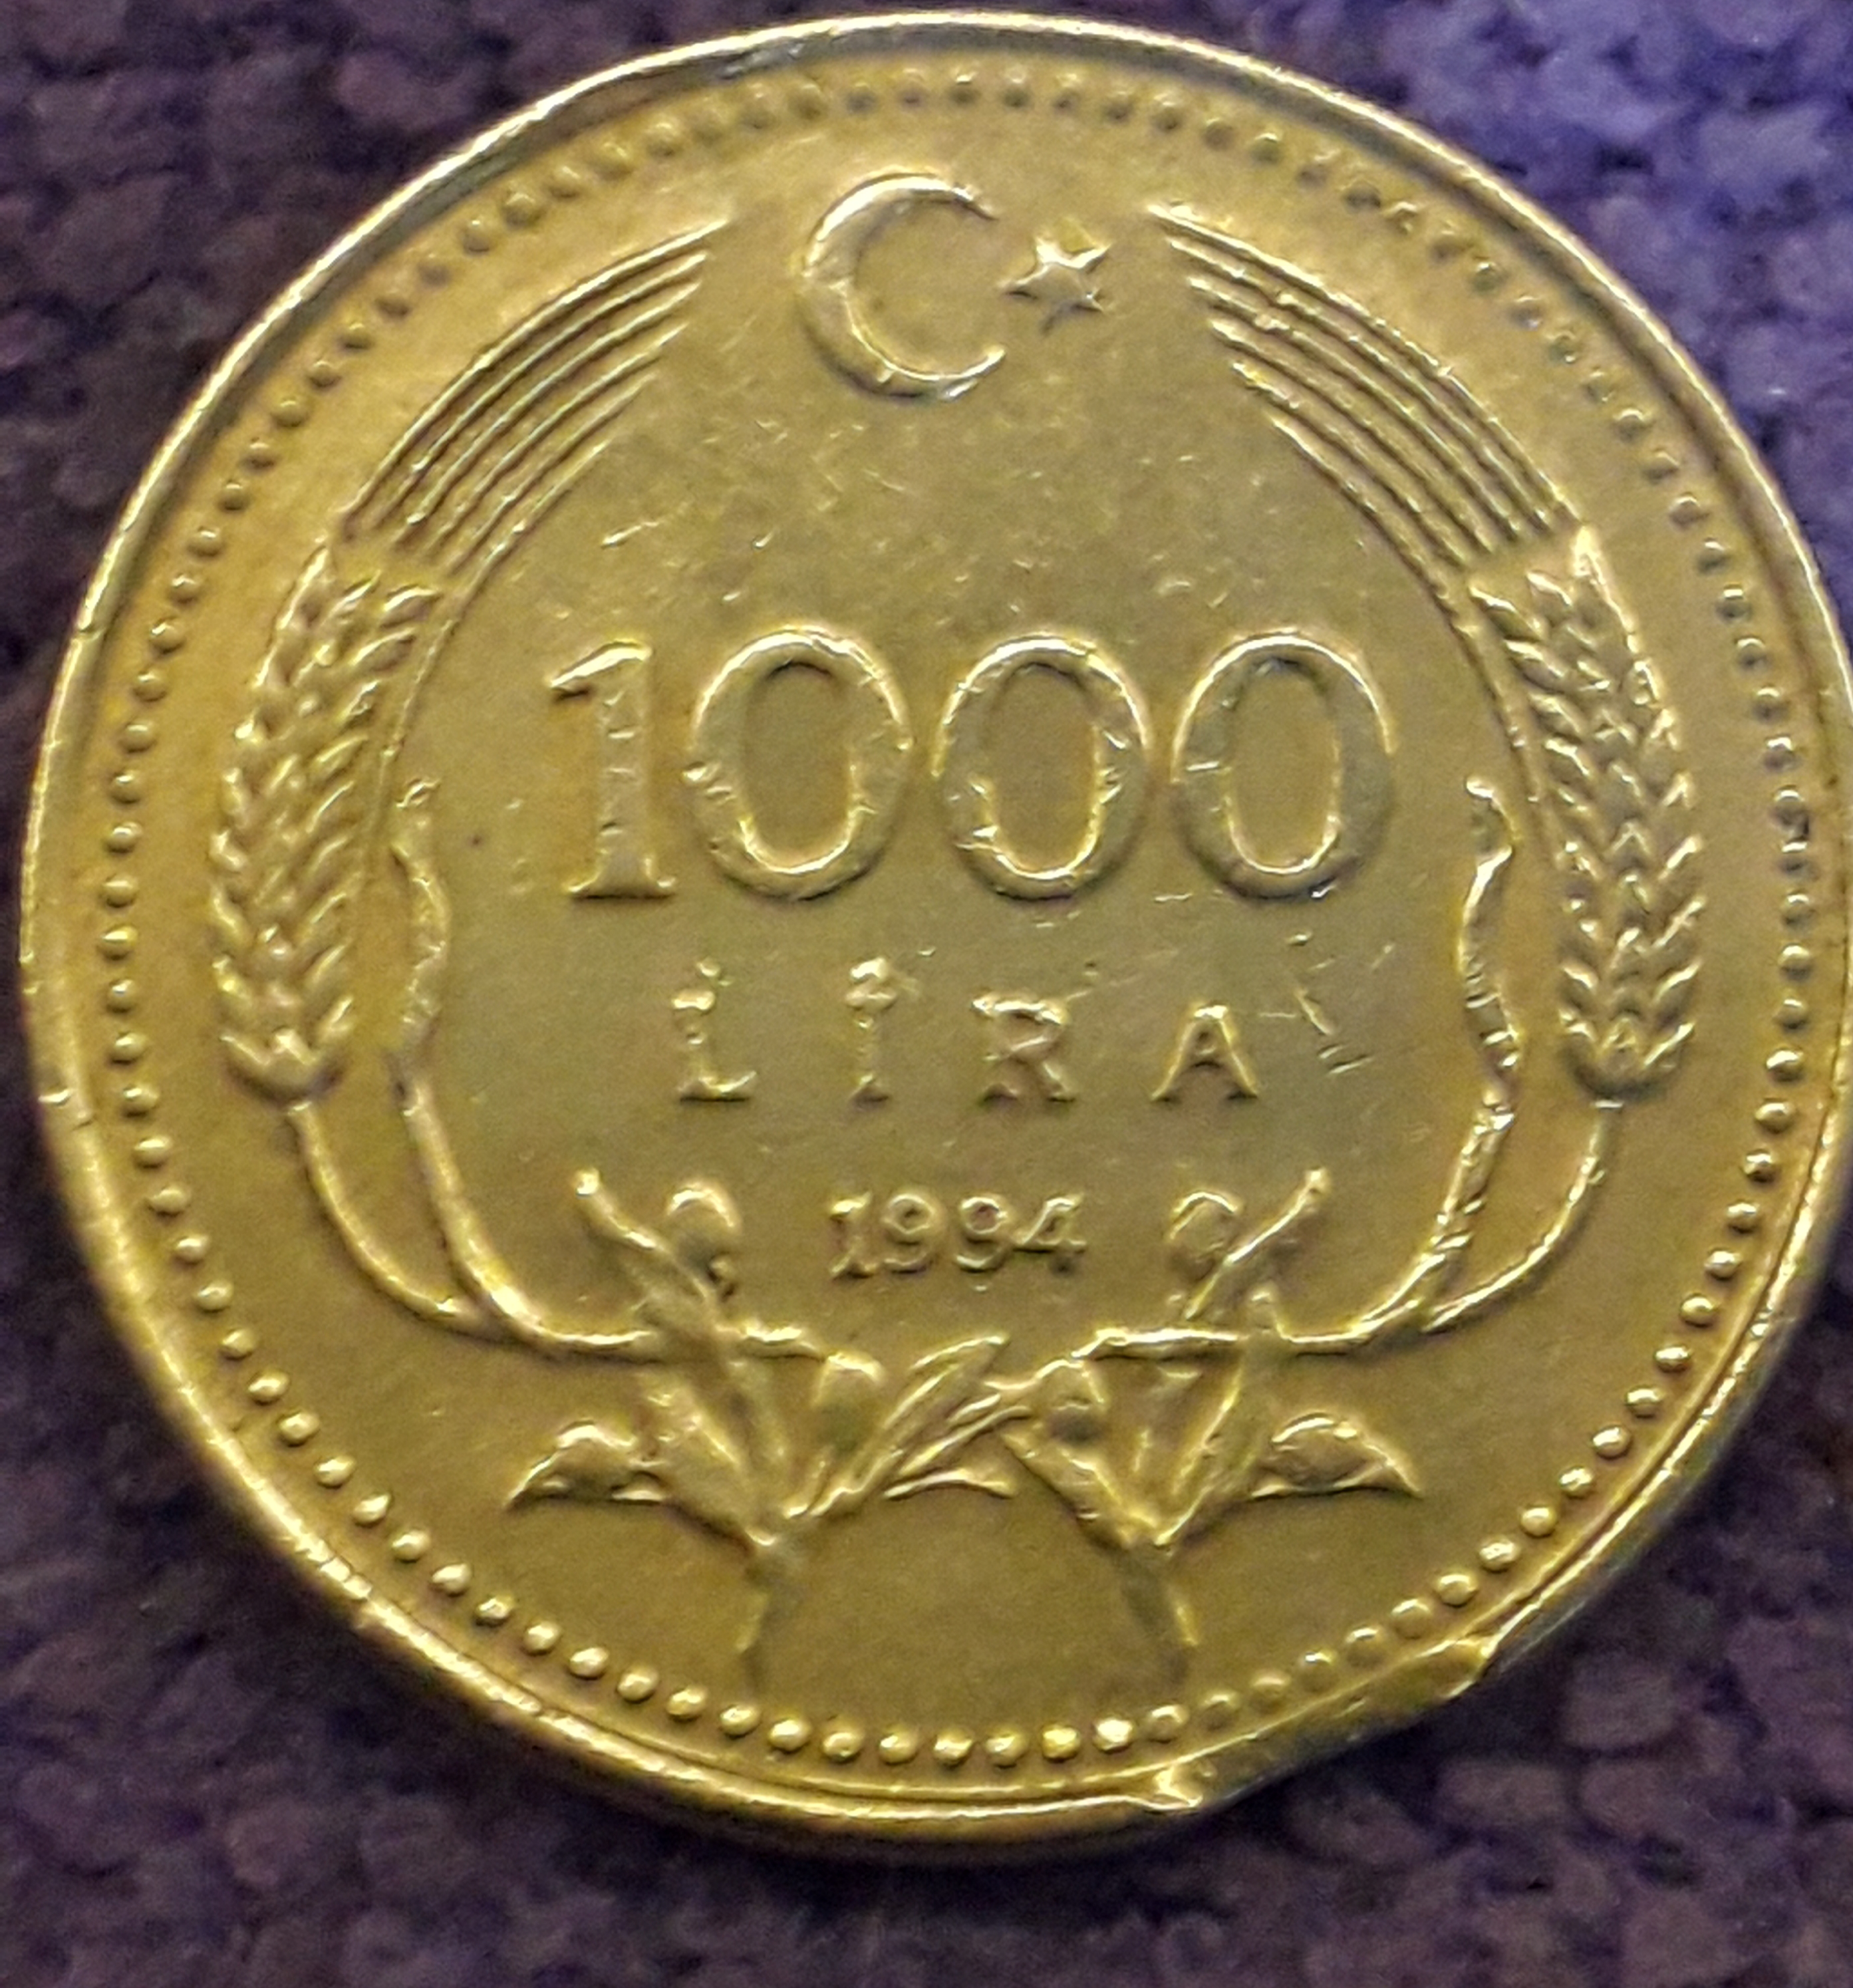 1000 Lira (Eksik Kısım) 1994 Ön Yüz